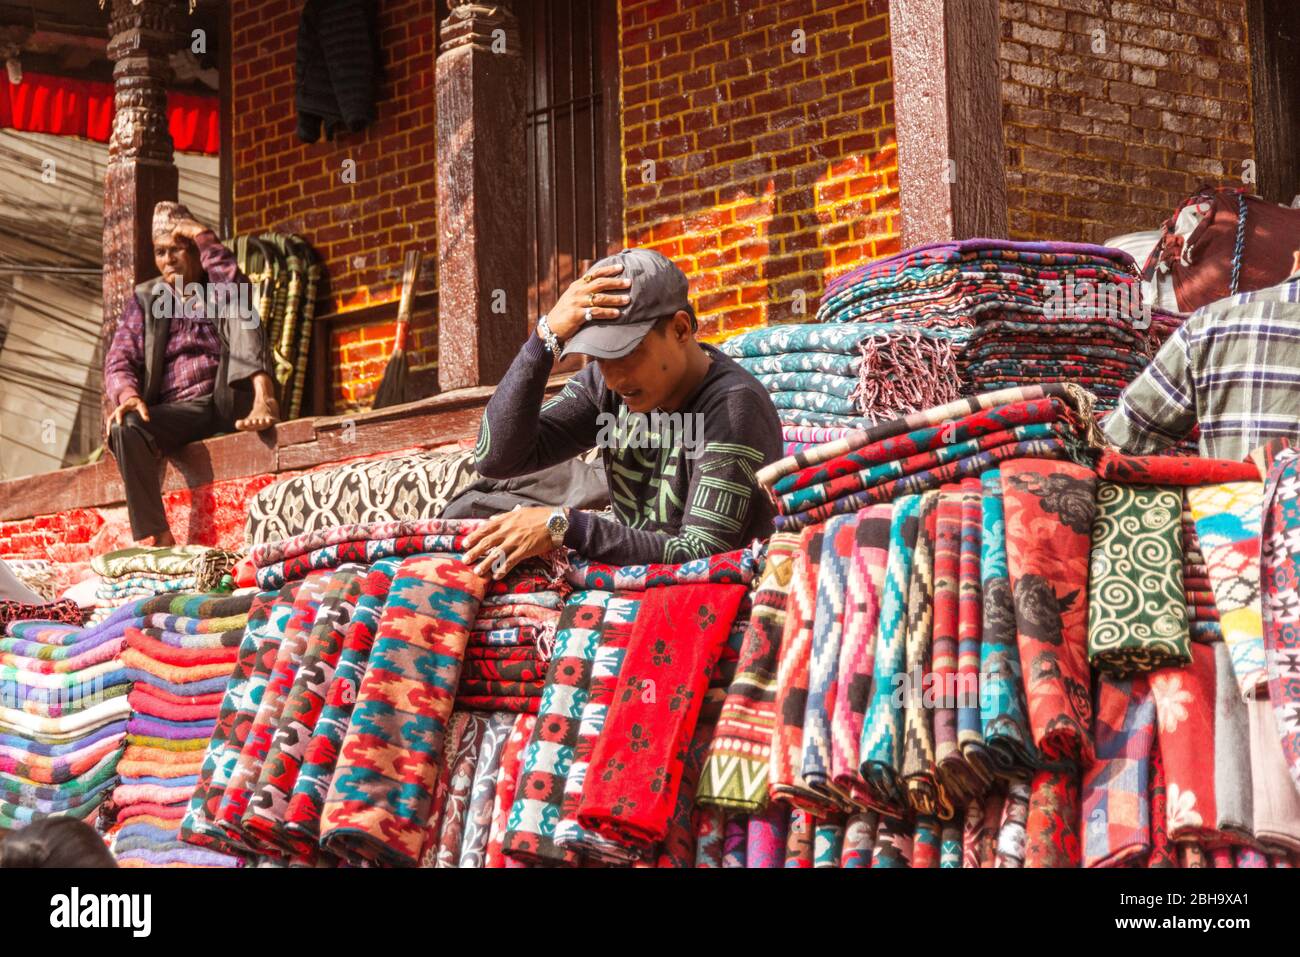 Market vendors, fabrics, shawls, market, Stock Photo